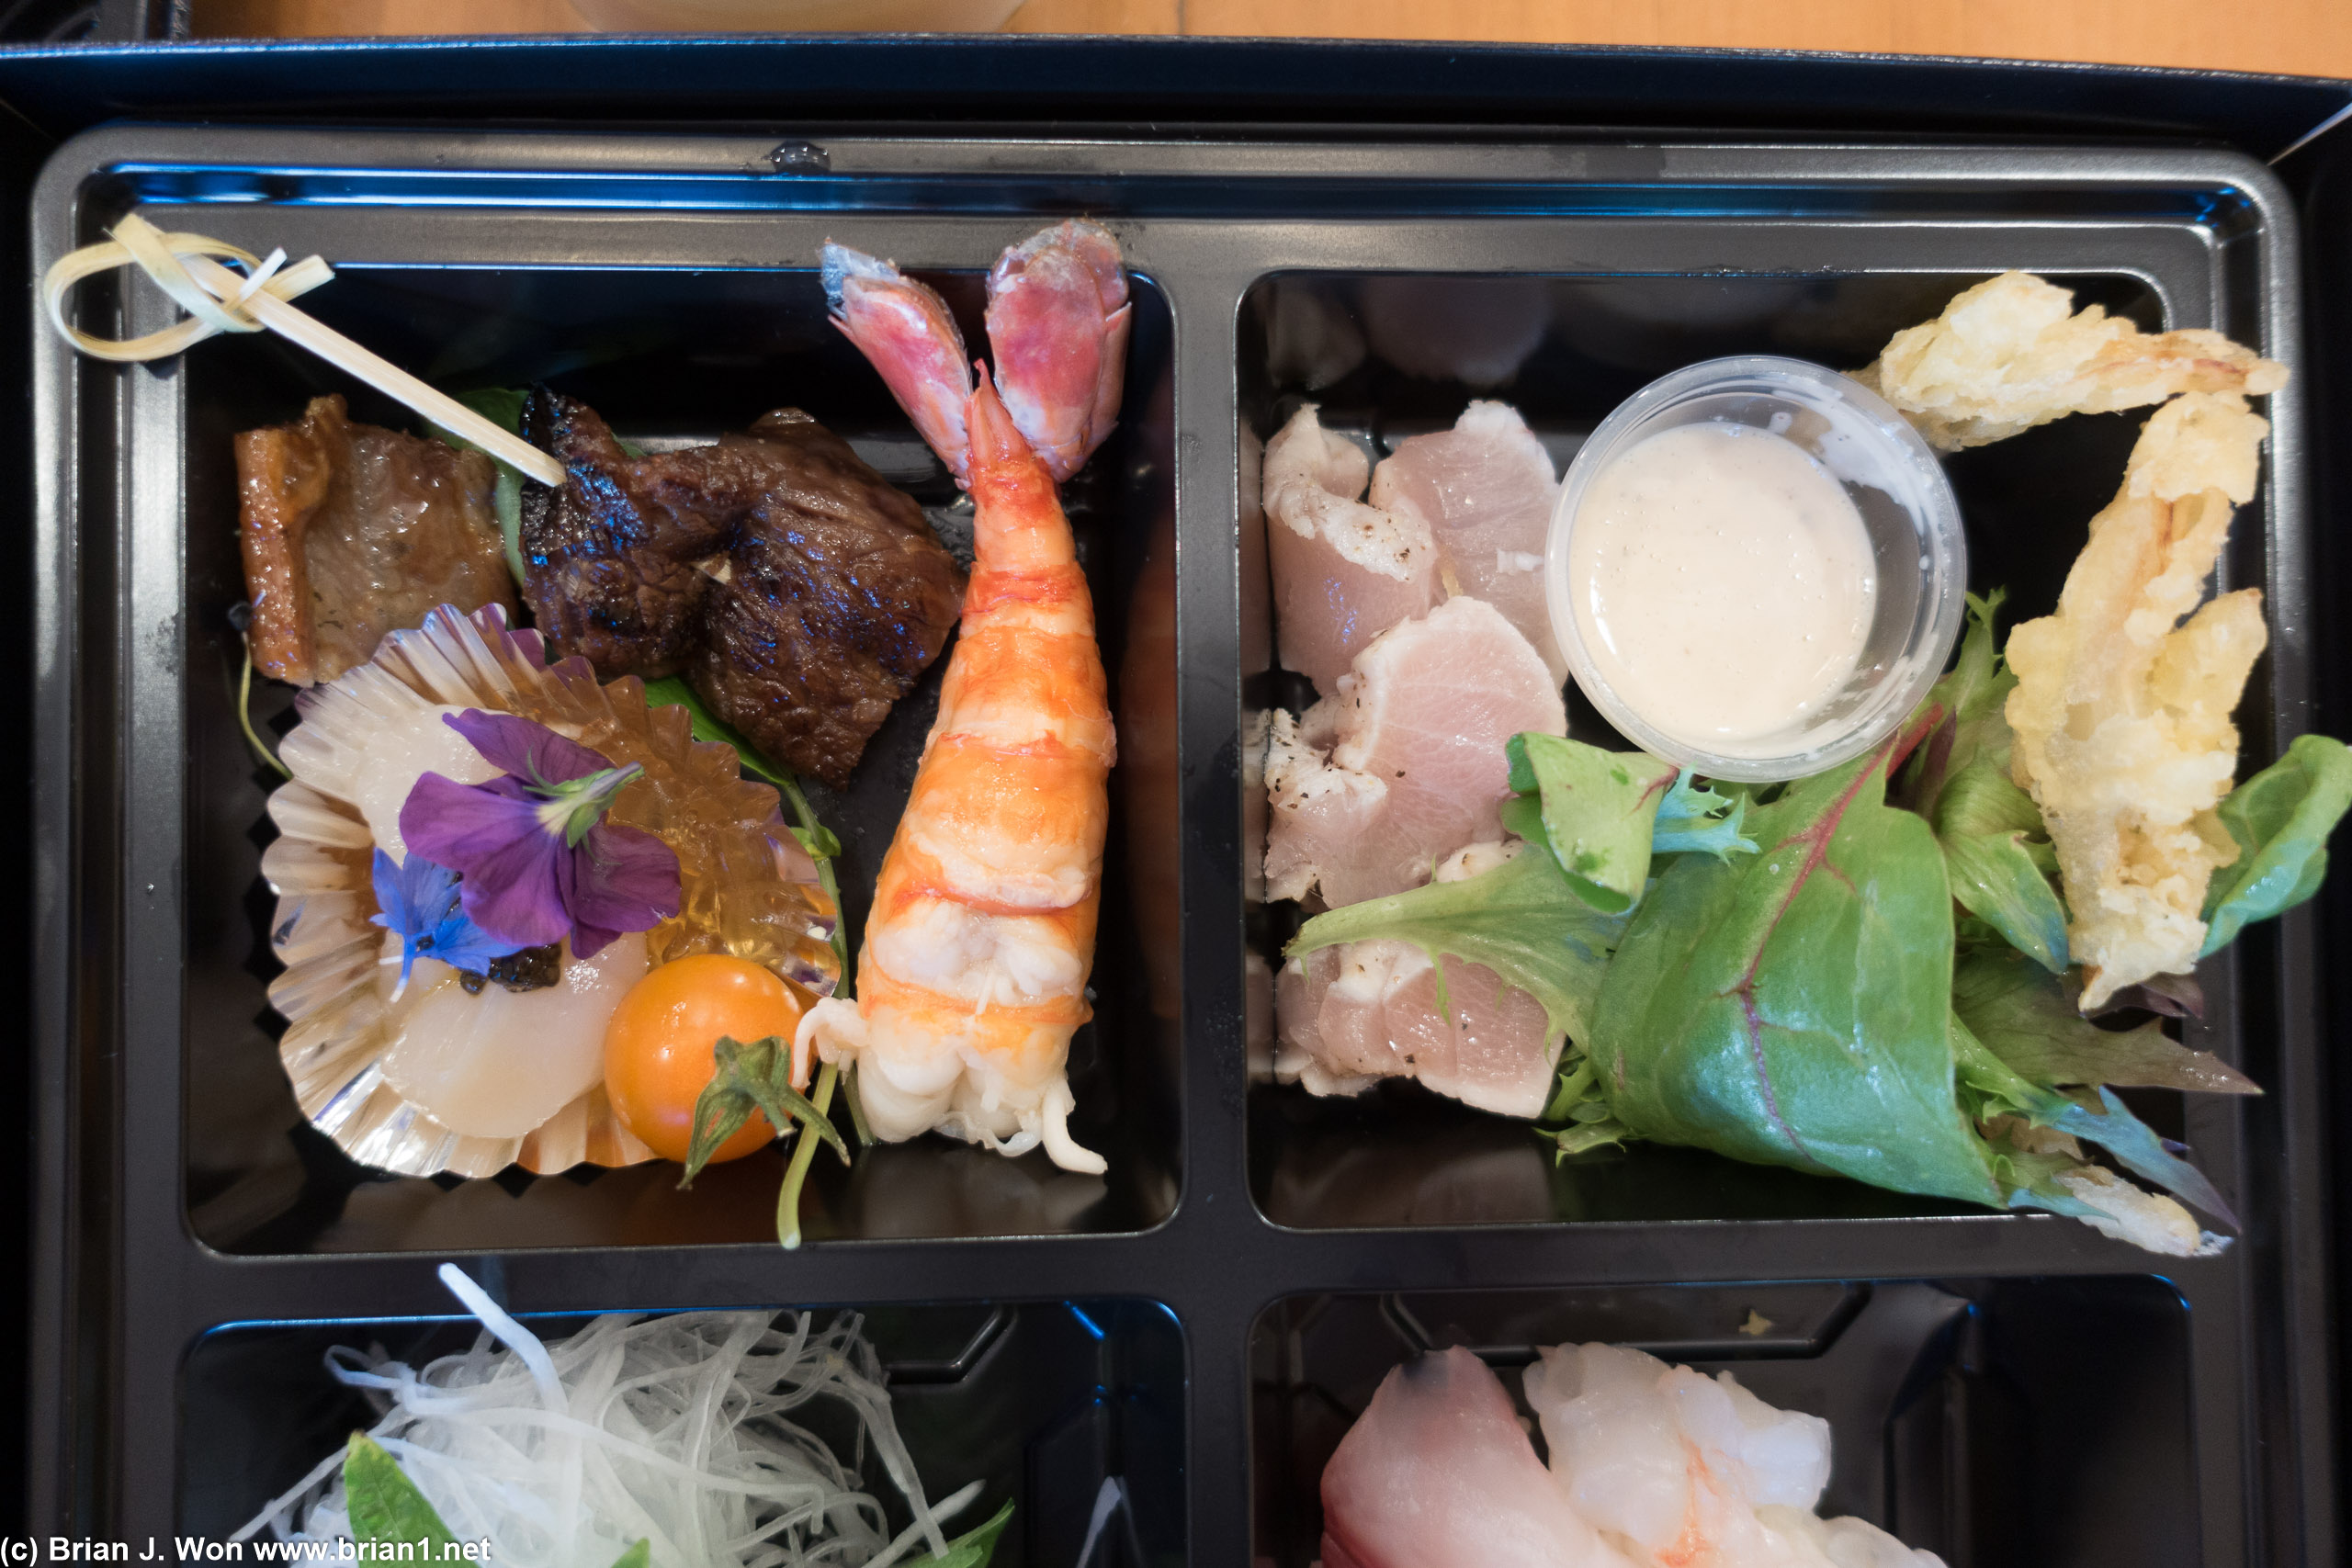 Sashimi salad at right.